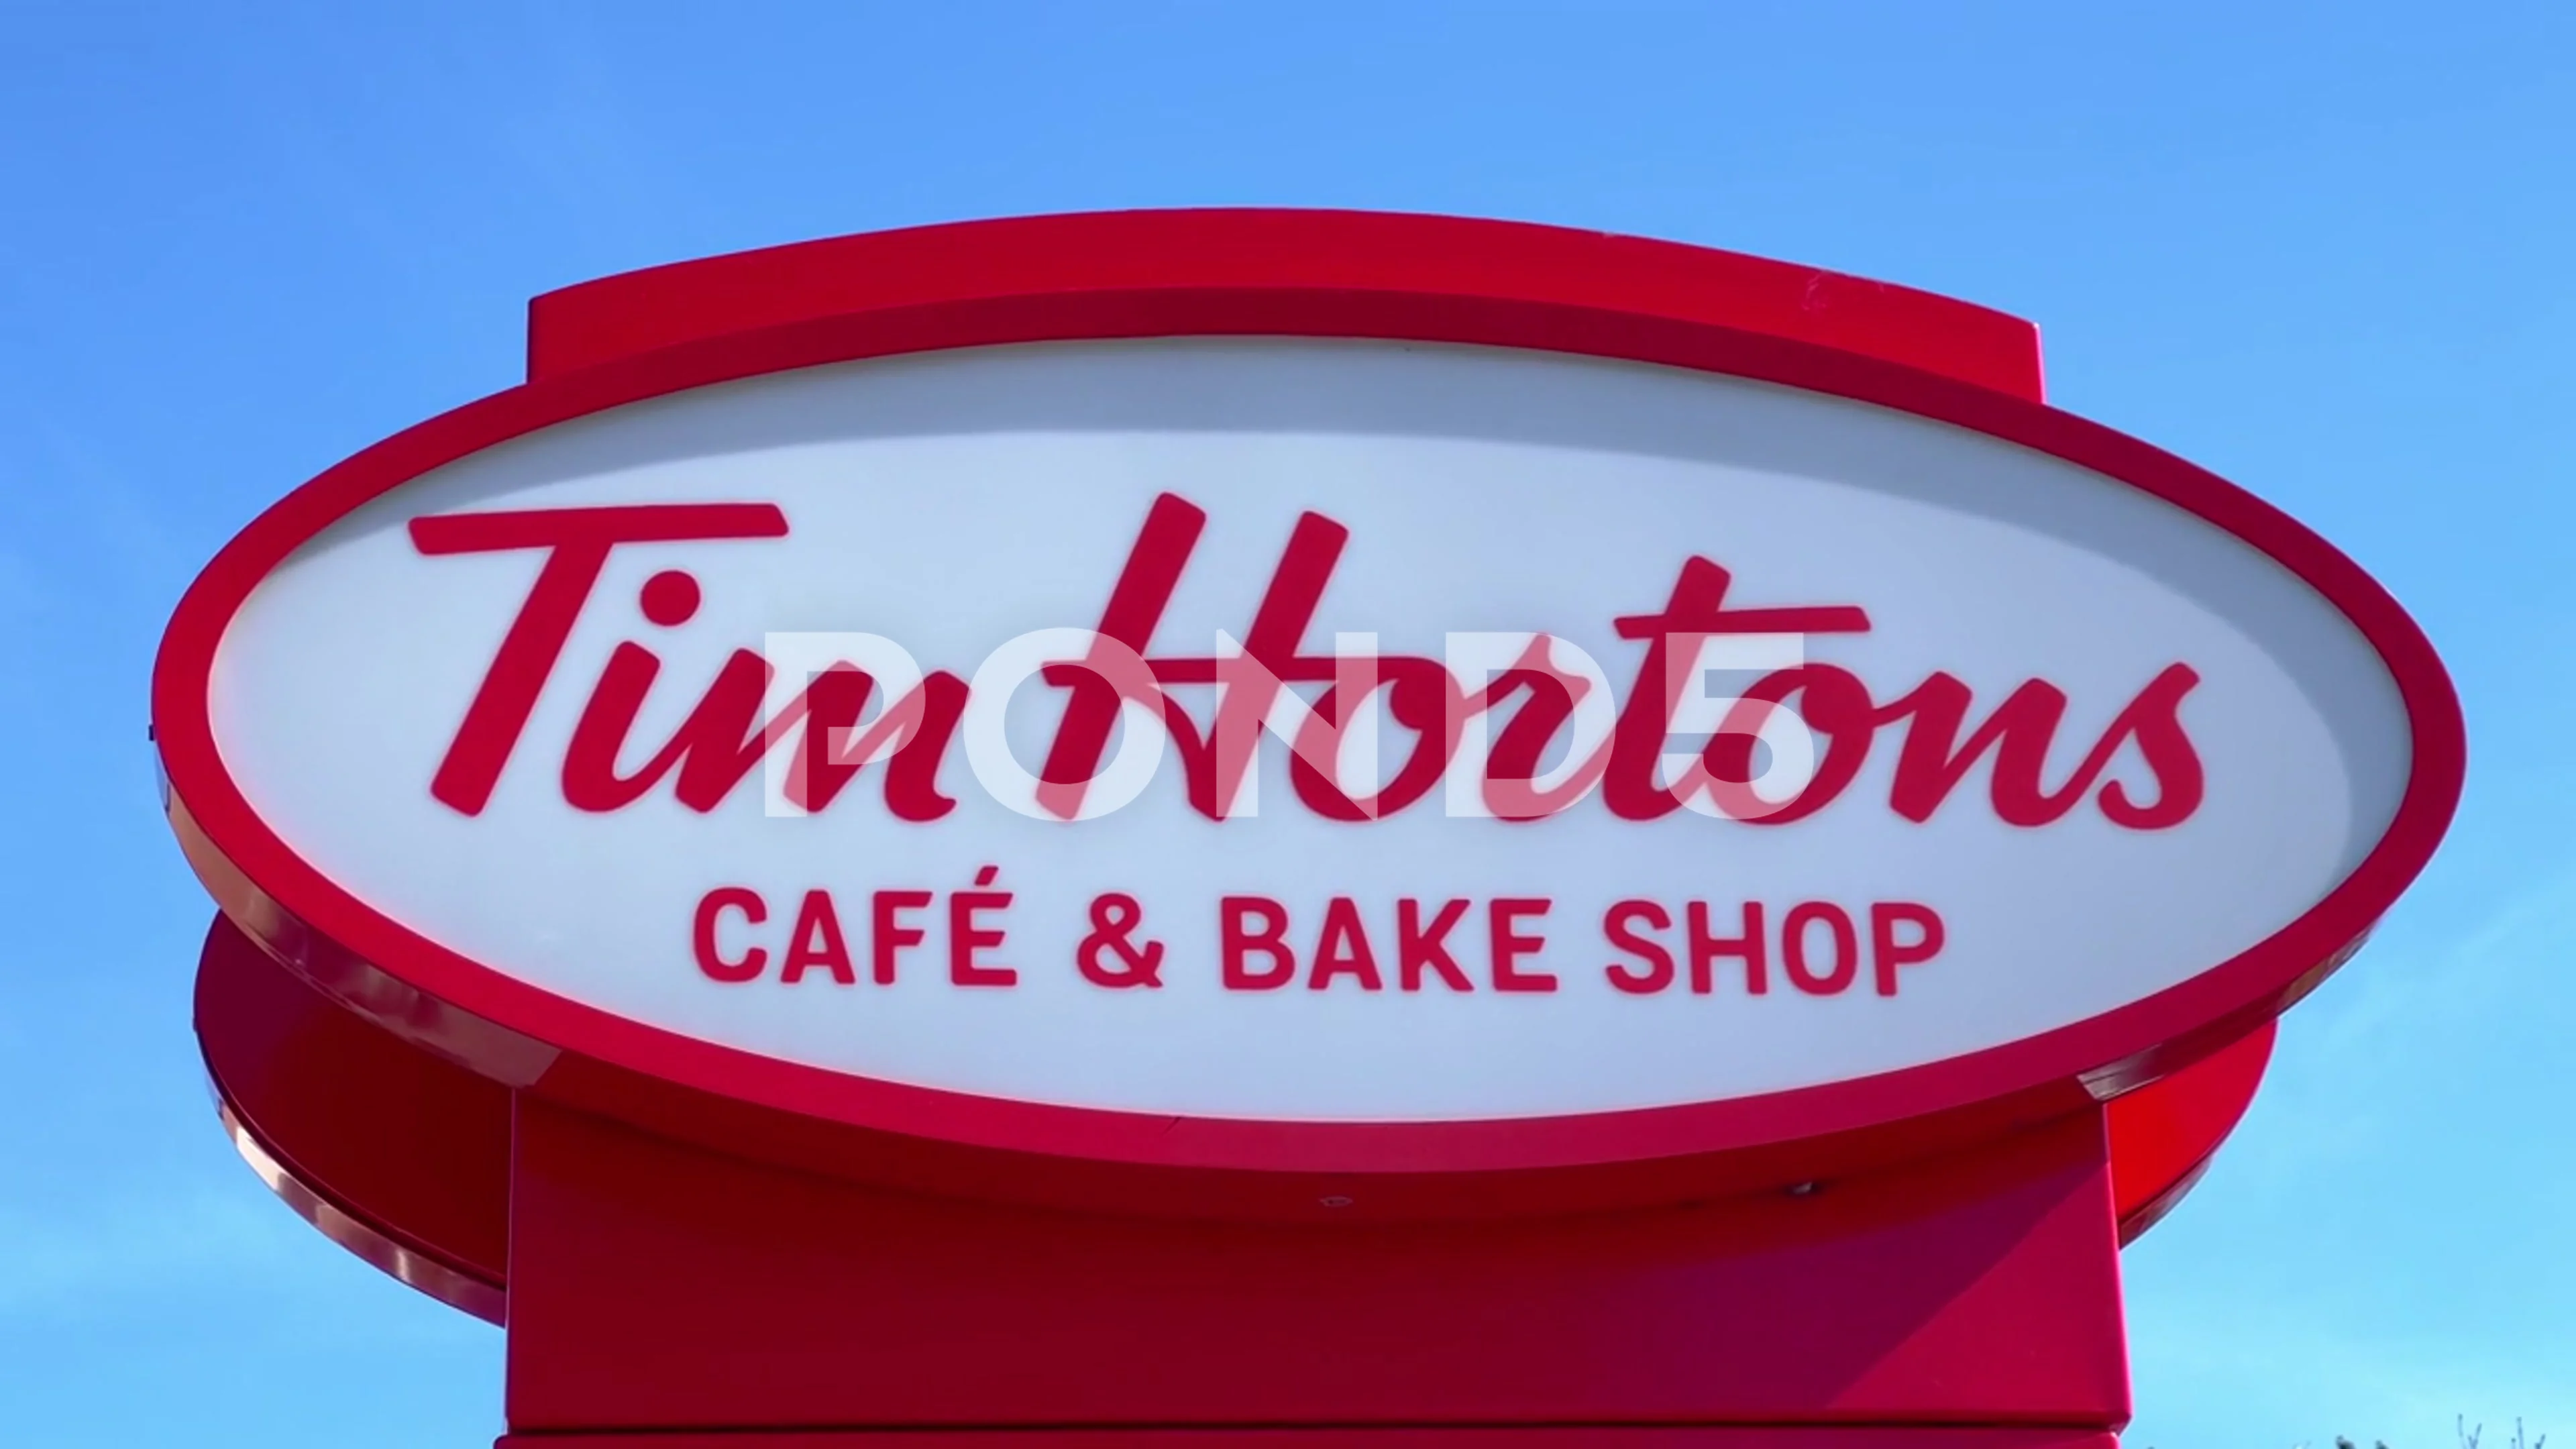 Tim Hortons Cafe and Bake Shop